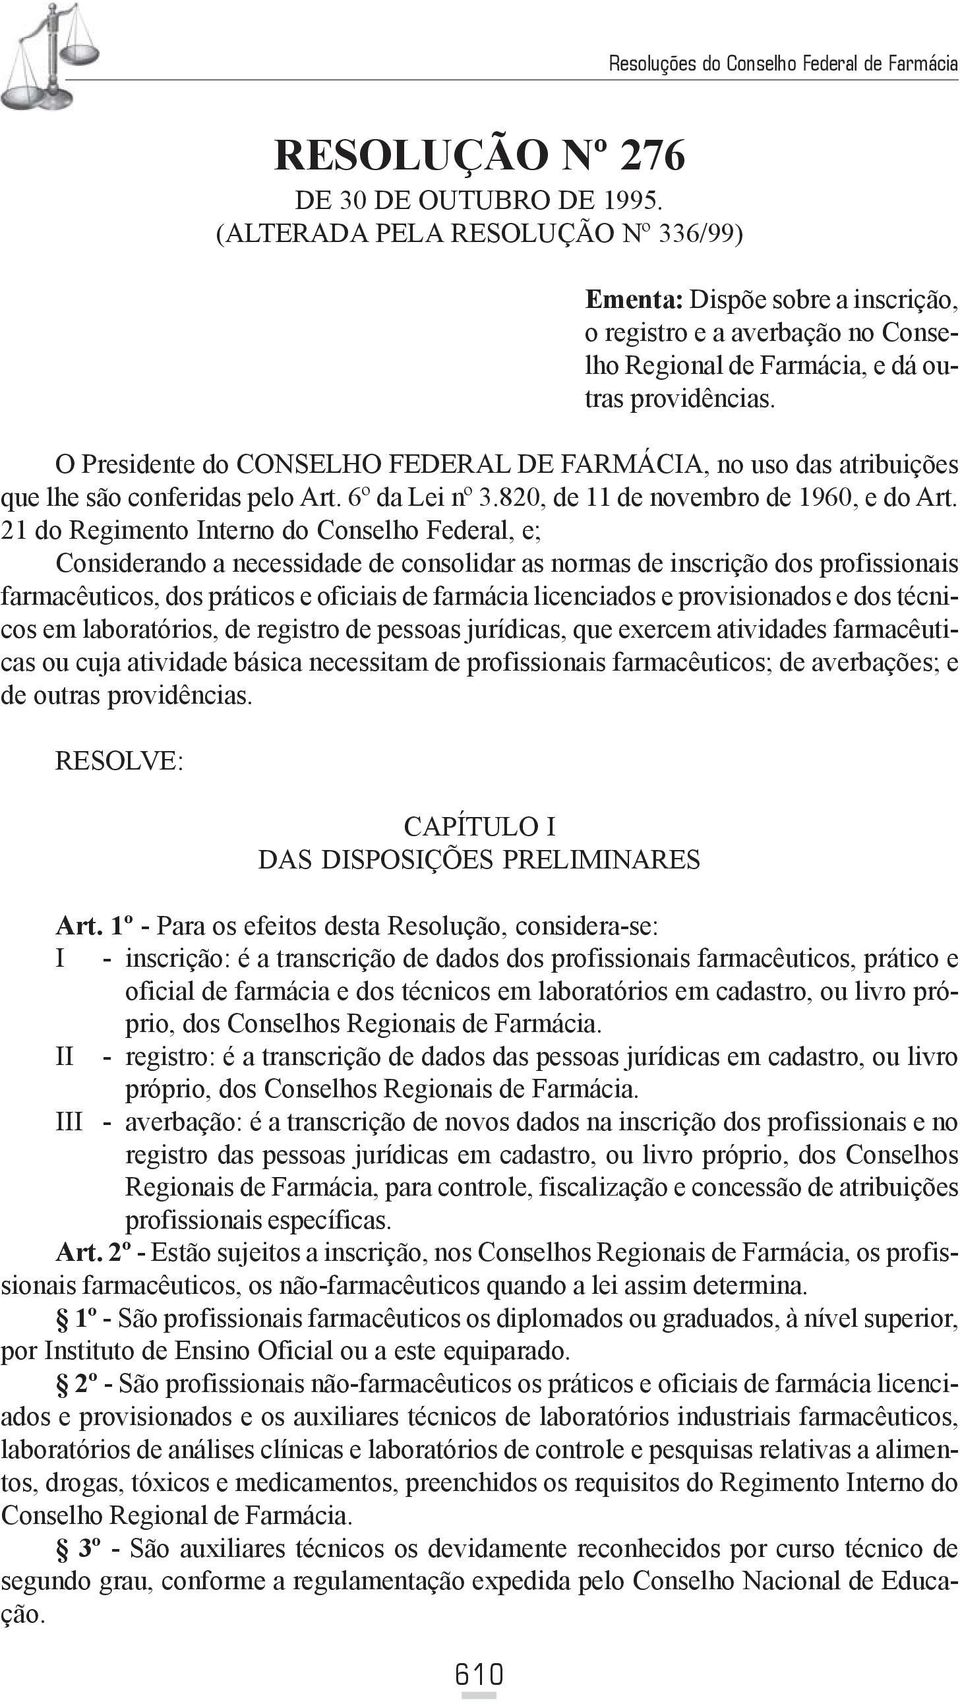 O Presidente do CONSELHO FEDERAL DE FARMÁCIA, no uso das atribuições que lhe são conferidas pelo Art. 6º da Lei nº 3.820, de 11 de novembro de 1960, e do Art.